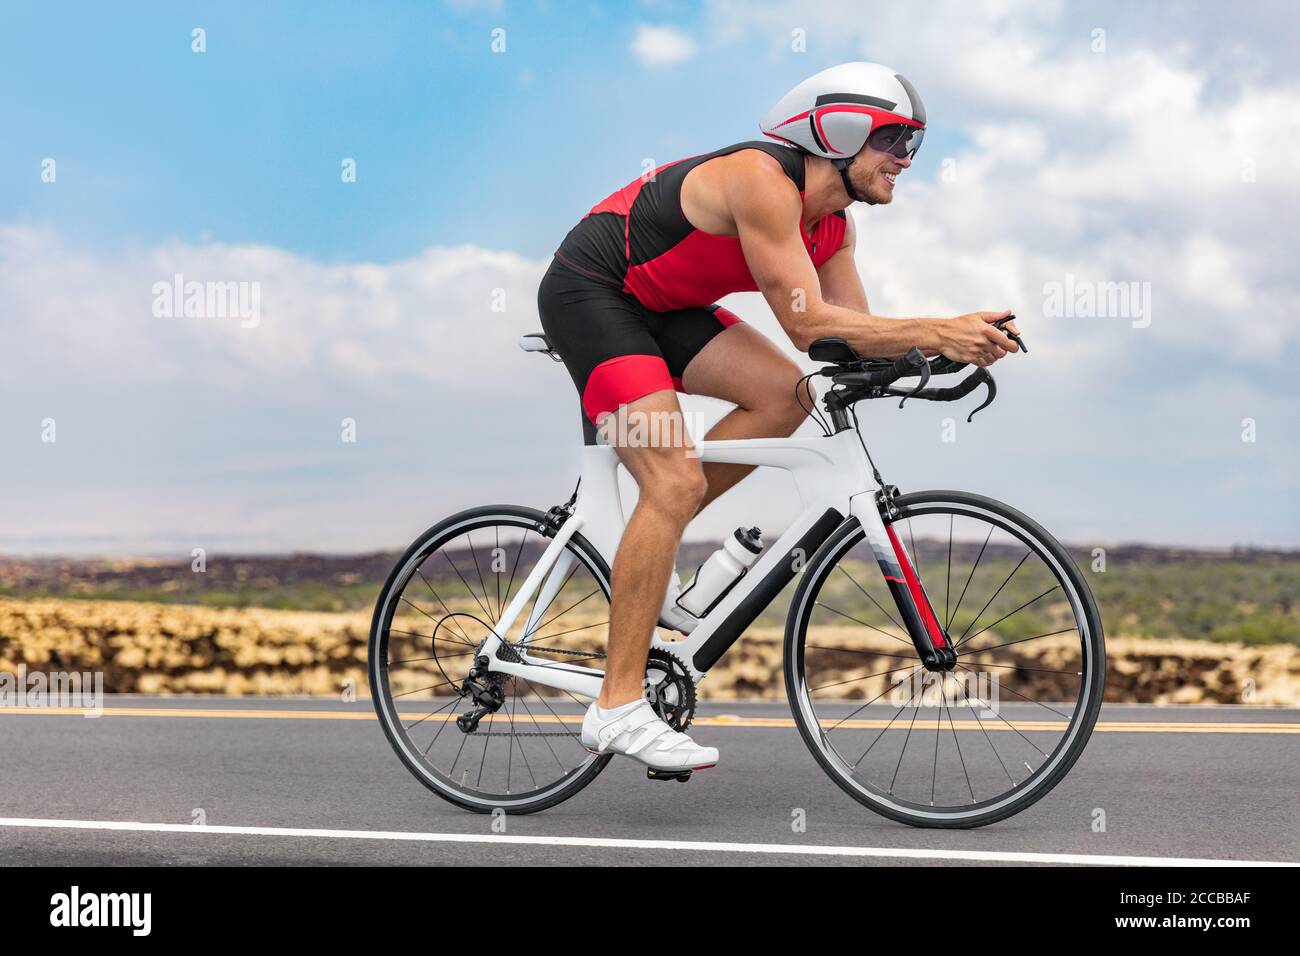 Triathlon Radfahrer Mann Radfahren Rennen auf Rennrad auf ironman  Wettbewerb Rennen gegen die Zeit. Triathlet Training Fahrrad-Training für  Triathlon-Rennen Stockfotografie - Alamy